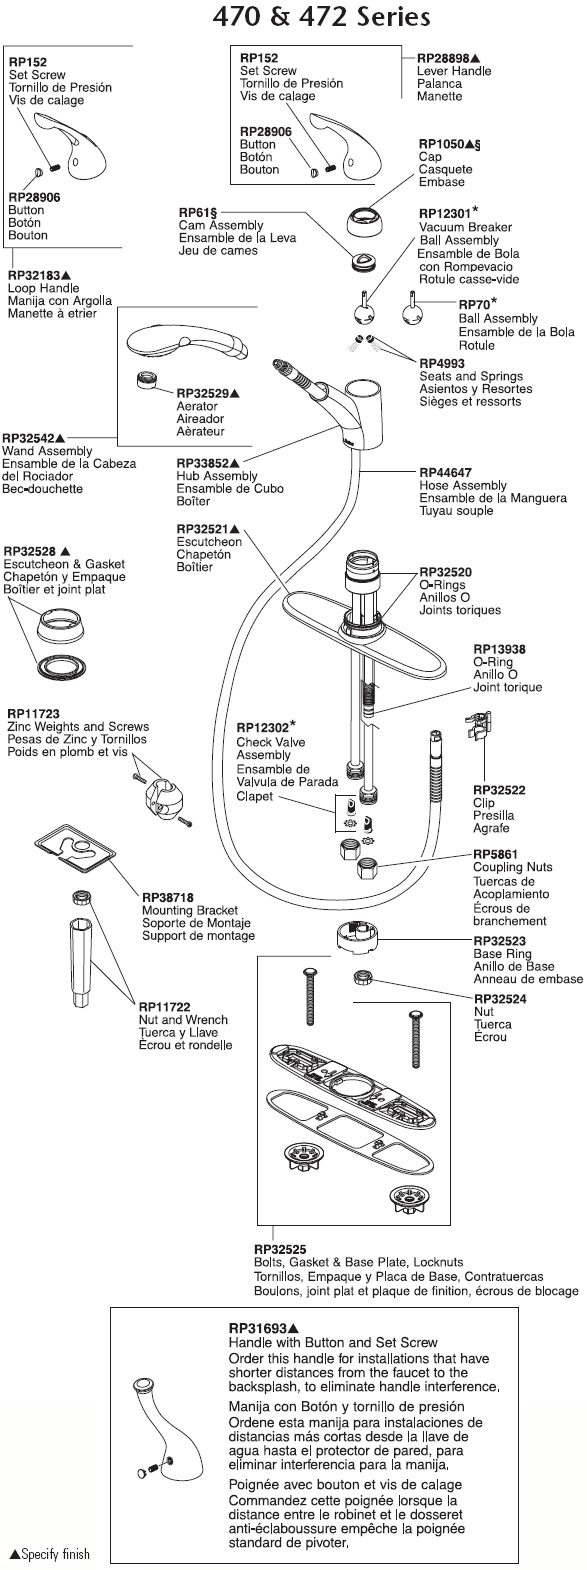 Delta Kitchen Faucet Parts Diagram Plumbingwarehouse Delta Kitchen Faucet Parts For Model 470 472